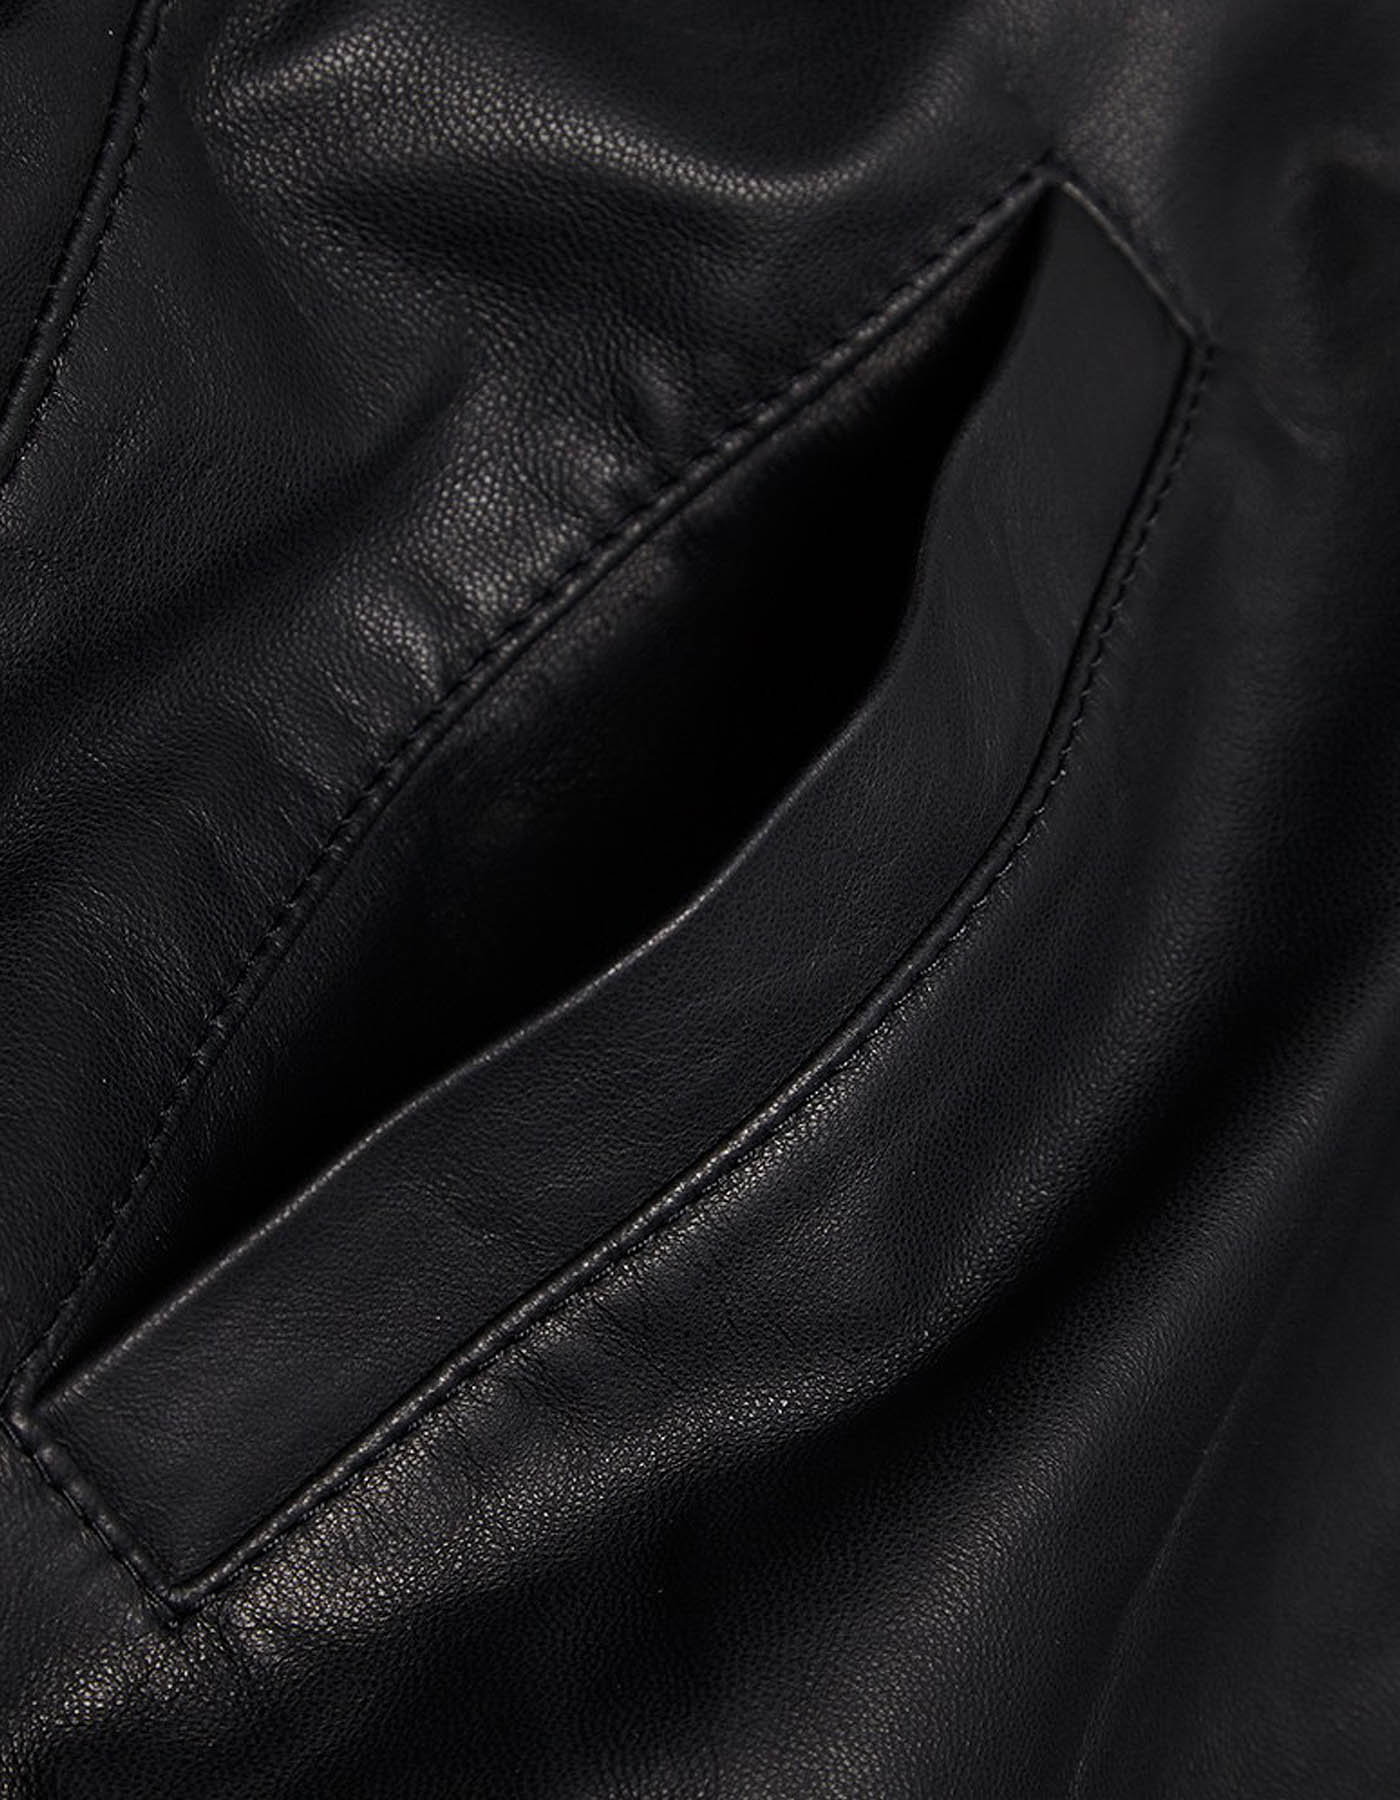 adidas leather jacket